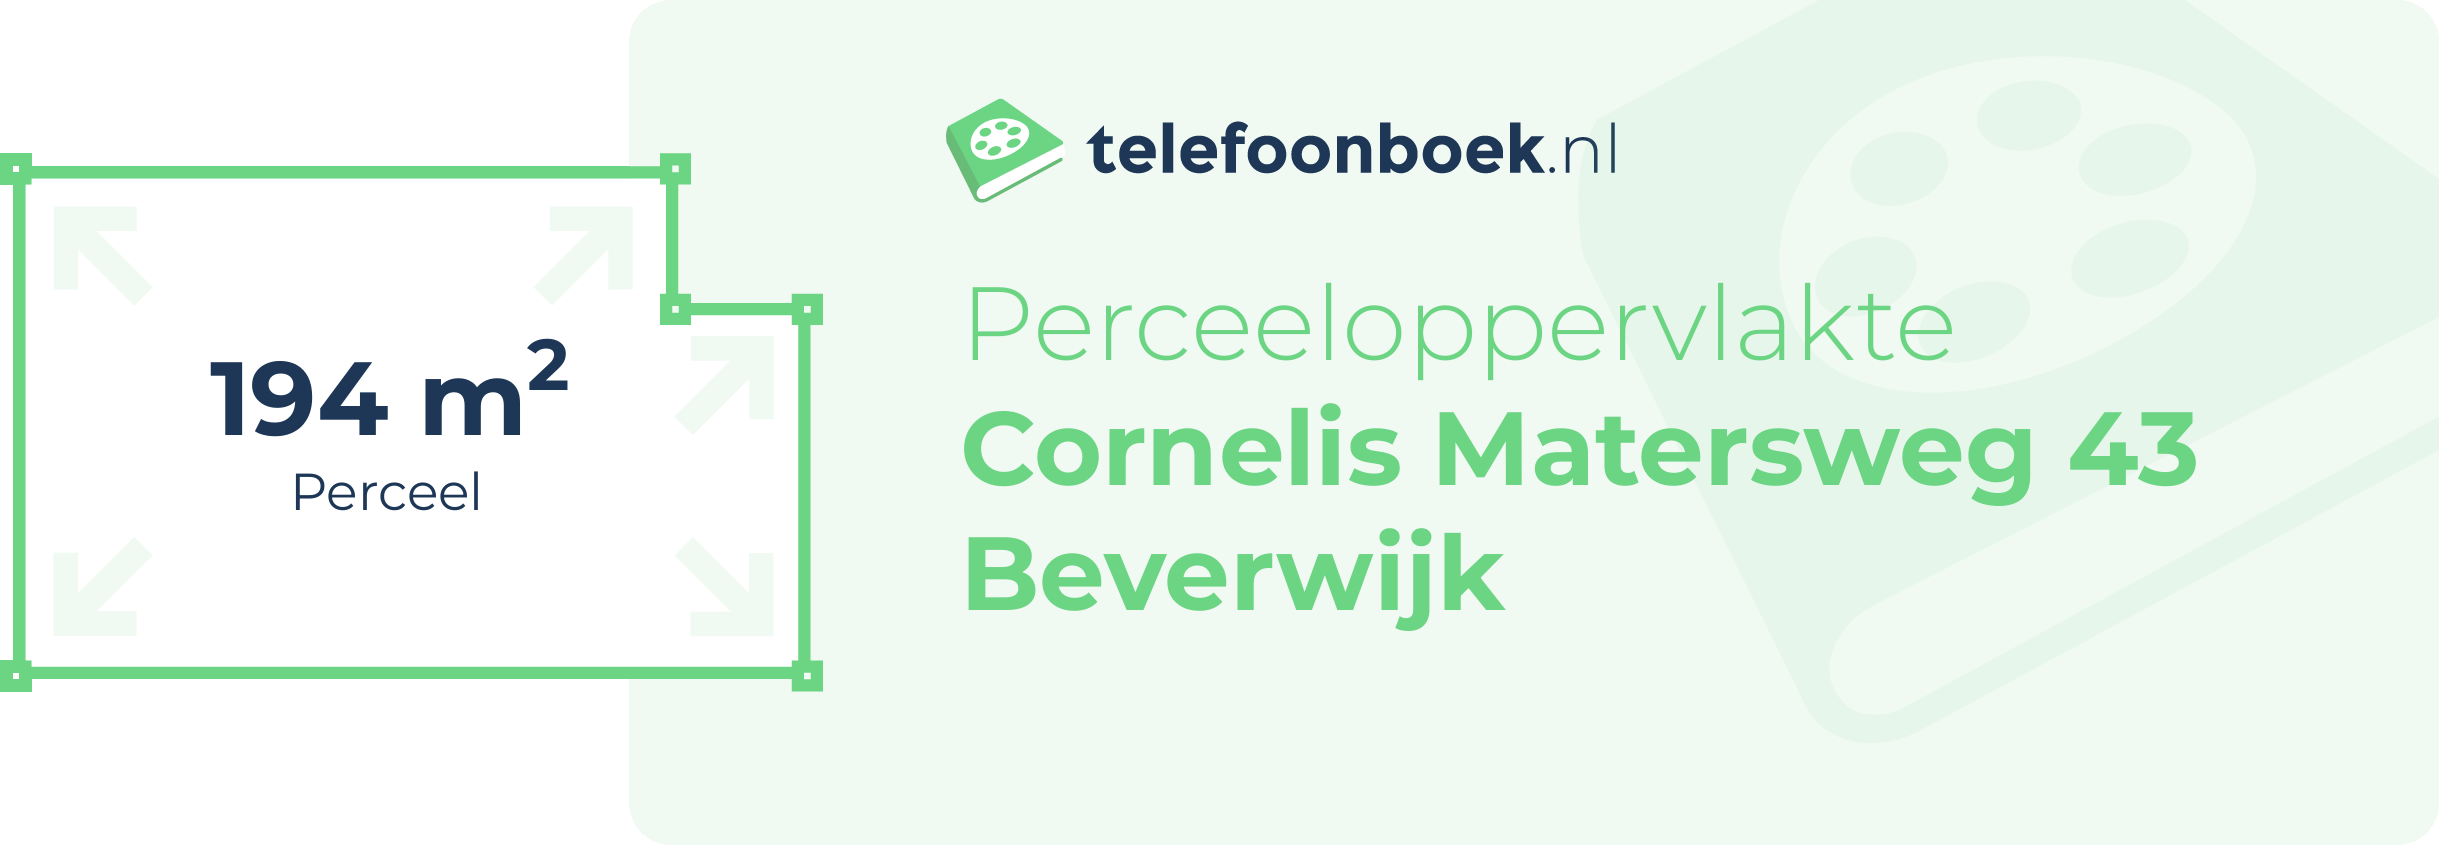 Perceeloppervlakte Cornelis Matersweg 43 Beverwijk